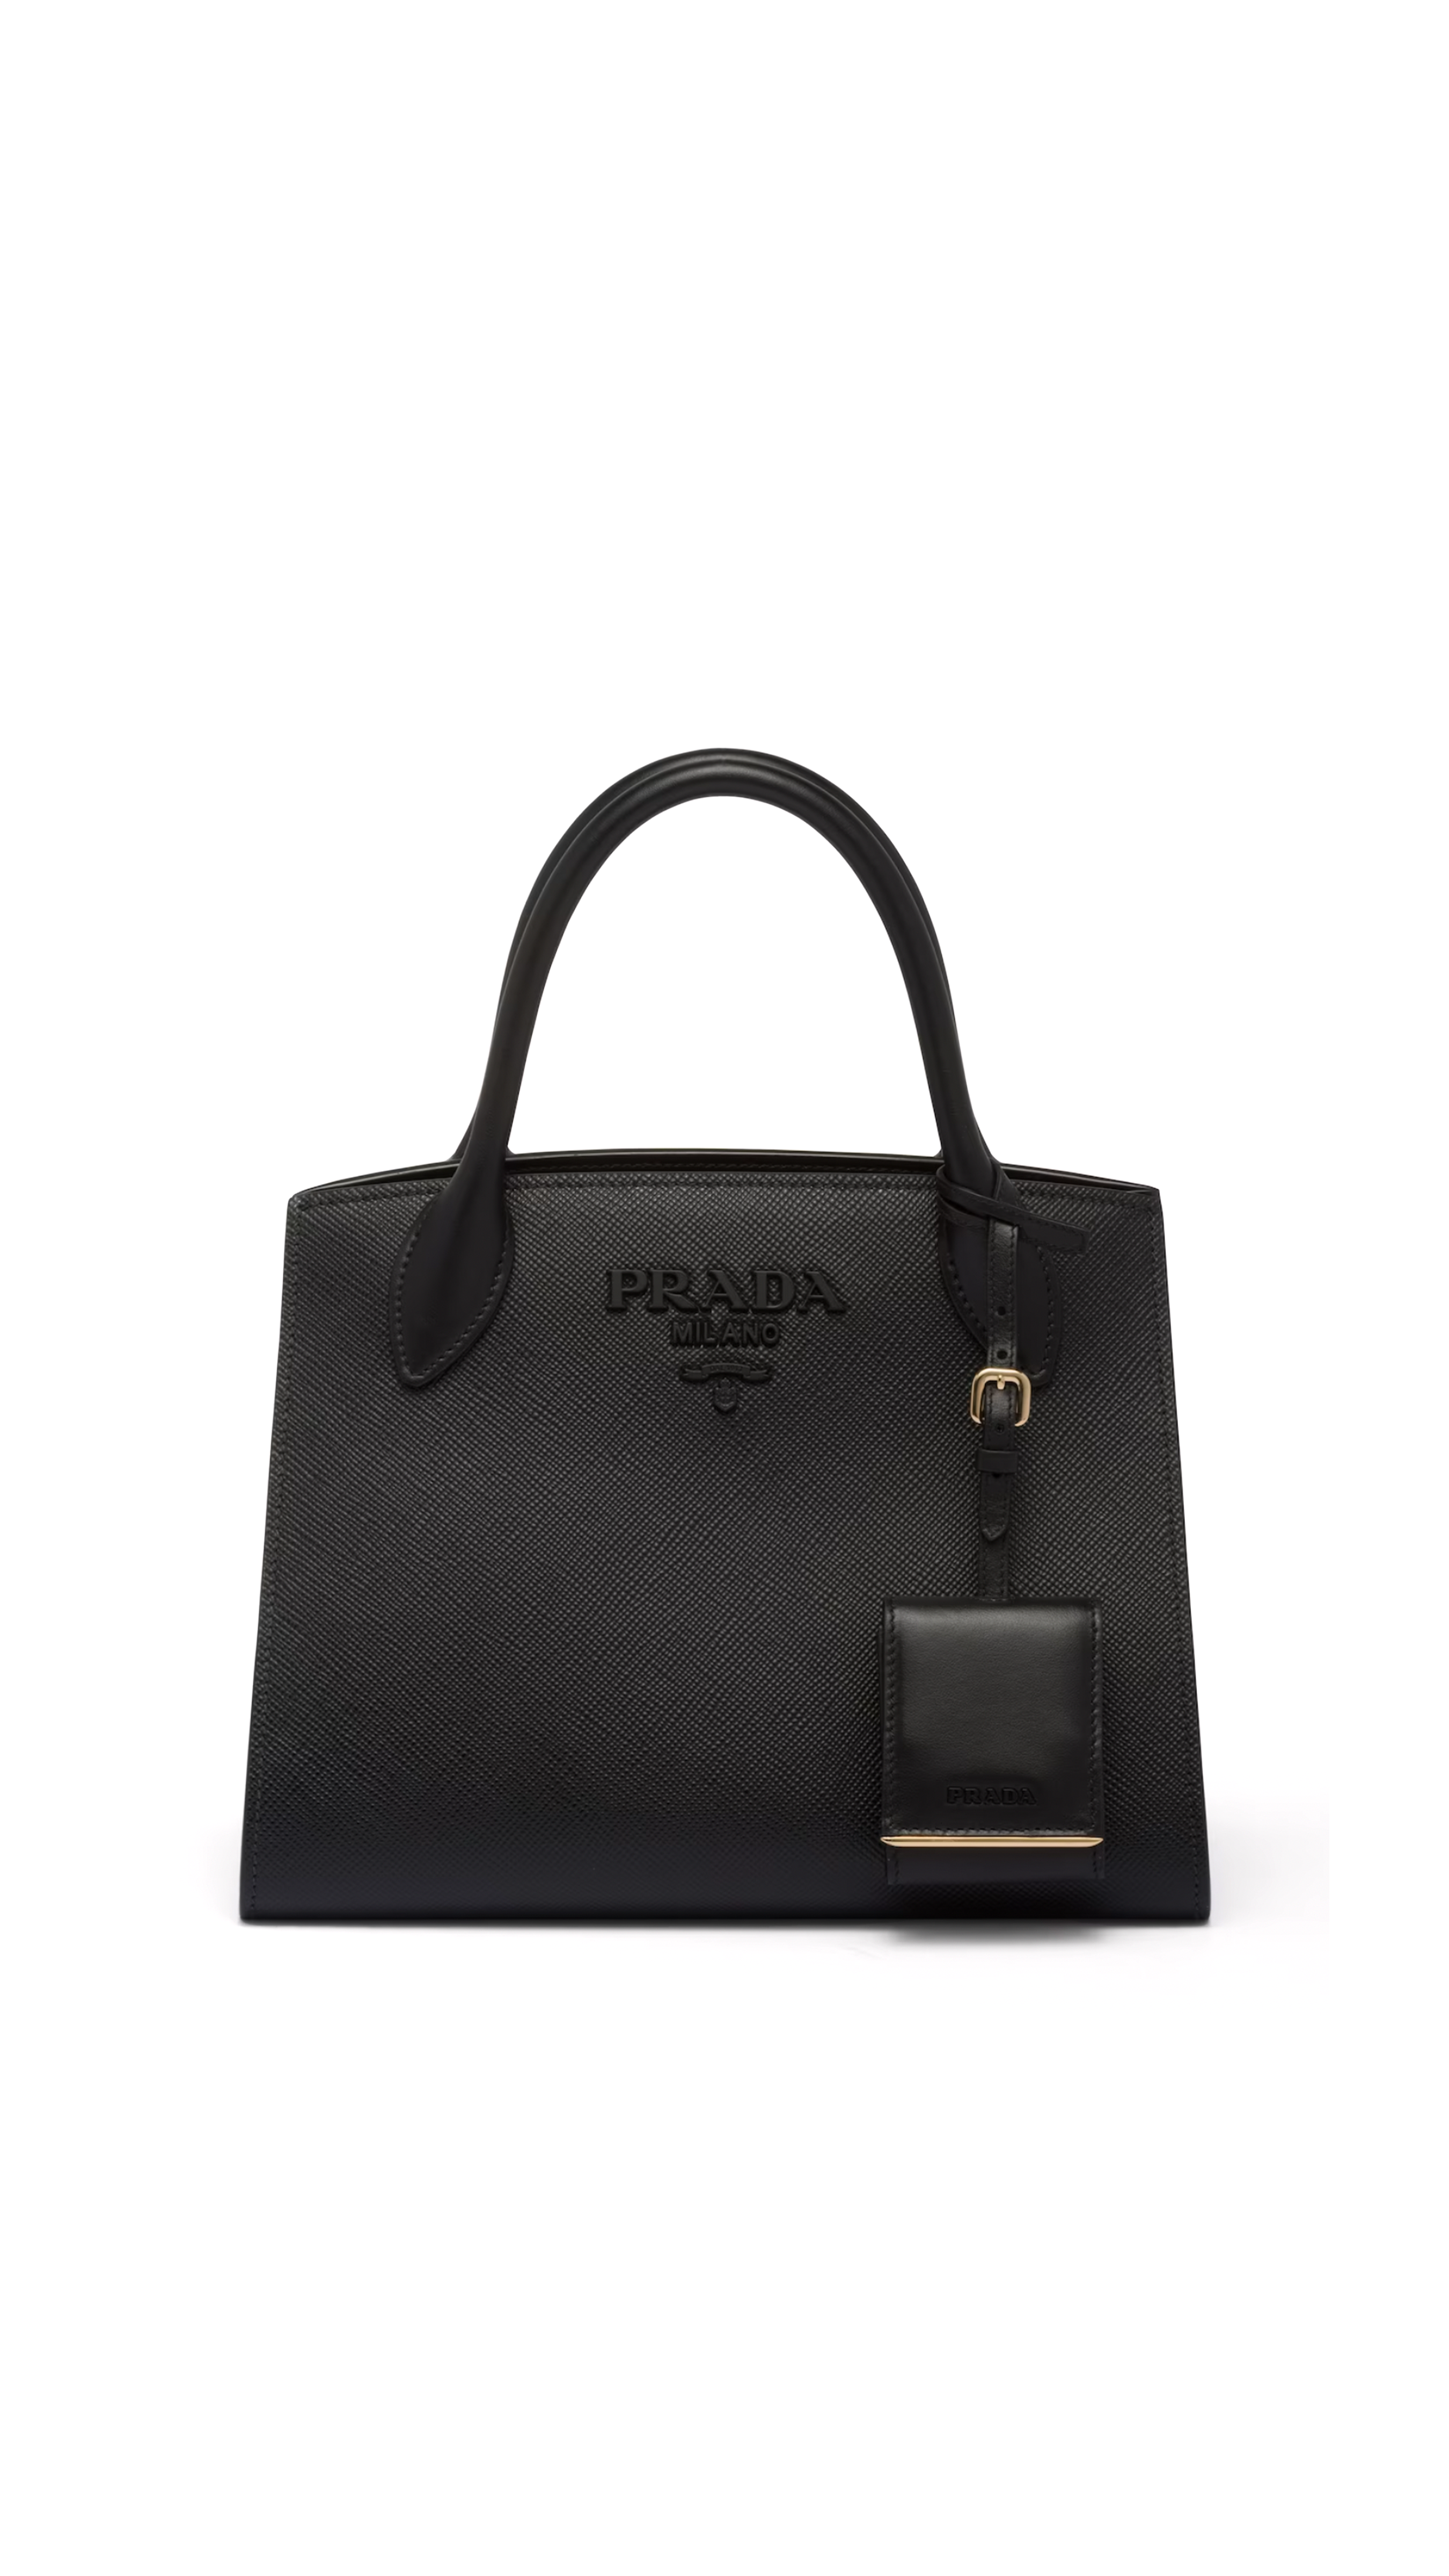 Prada Monochrome Saffiano Leather Small Bag in Black